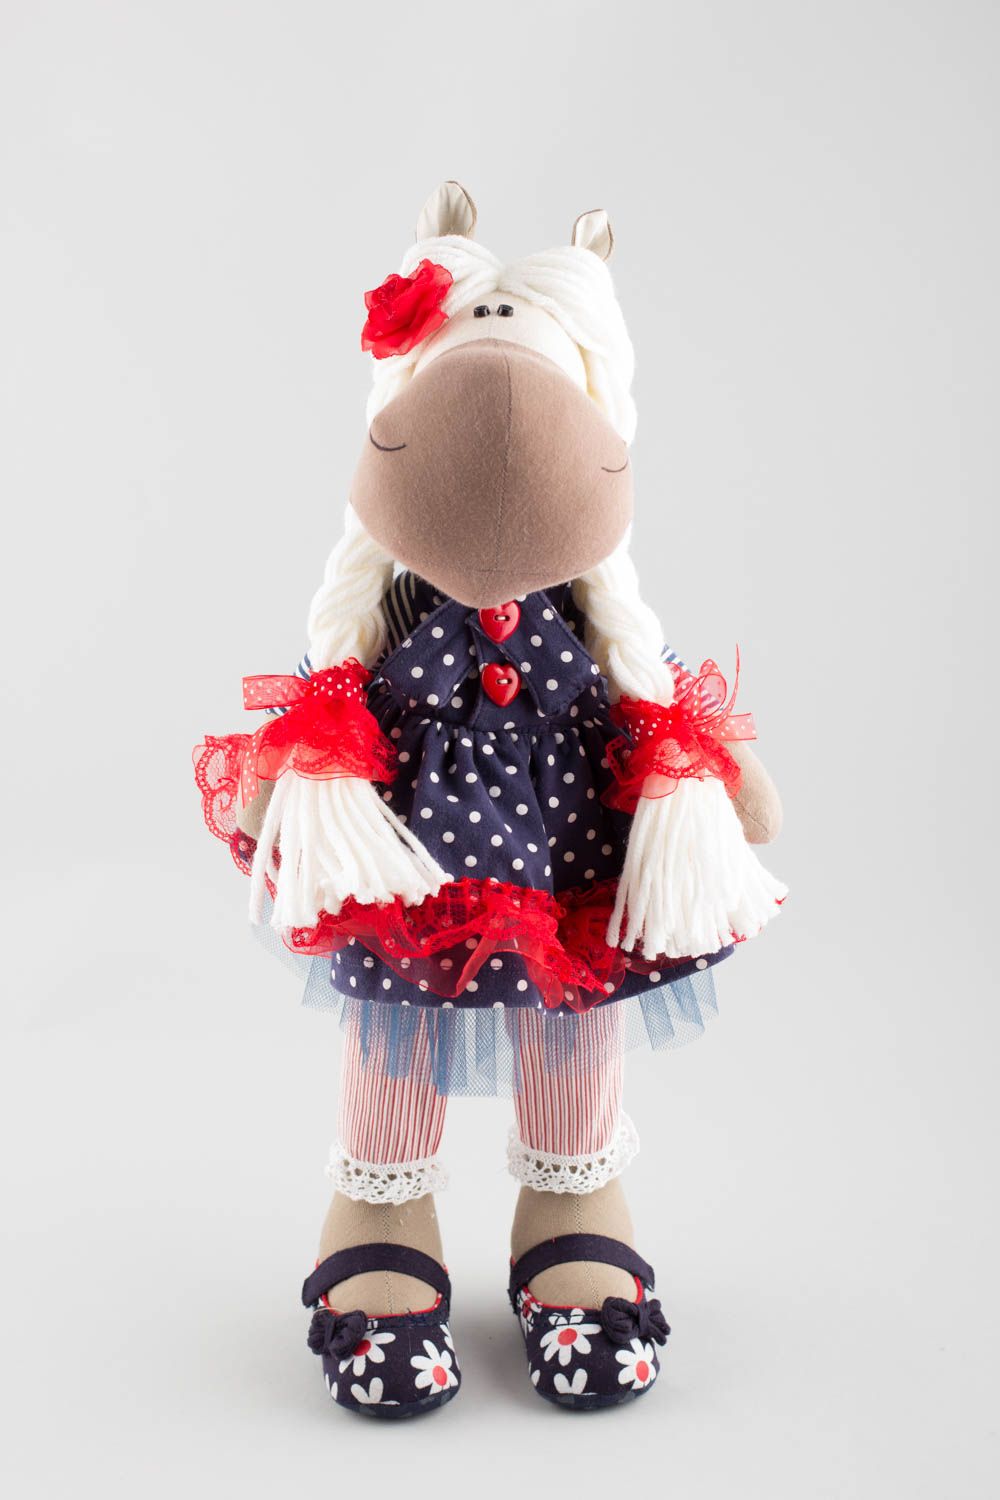 Textil Kuscheltier Pferd im Kleid grell schön modisch handmade für Kinder foto 2